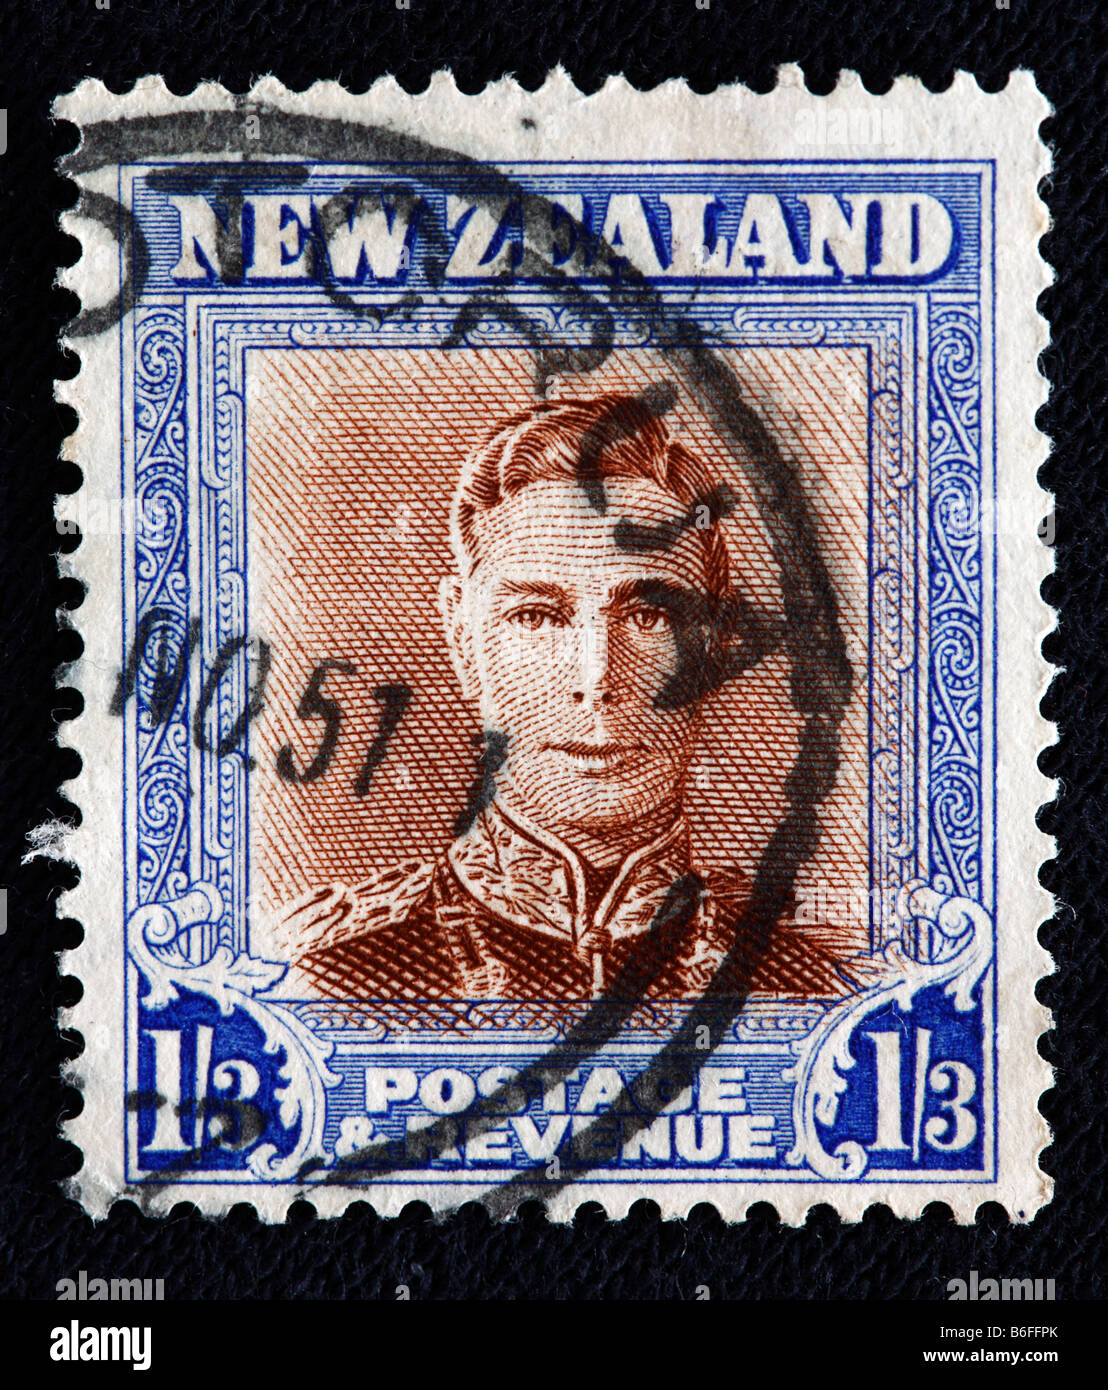 König George VI des Vereinigten Königreichs (1936 – 1952), Briefmarke, Neuseeland Stockfoto